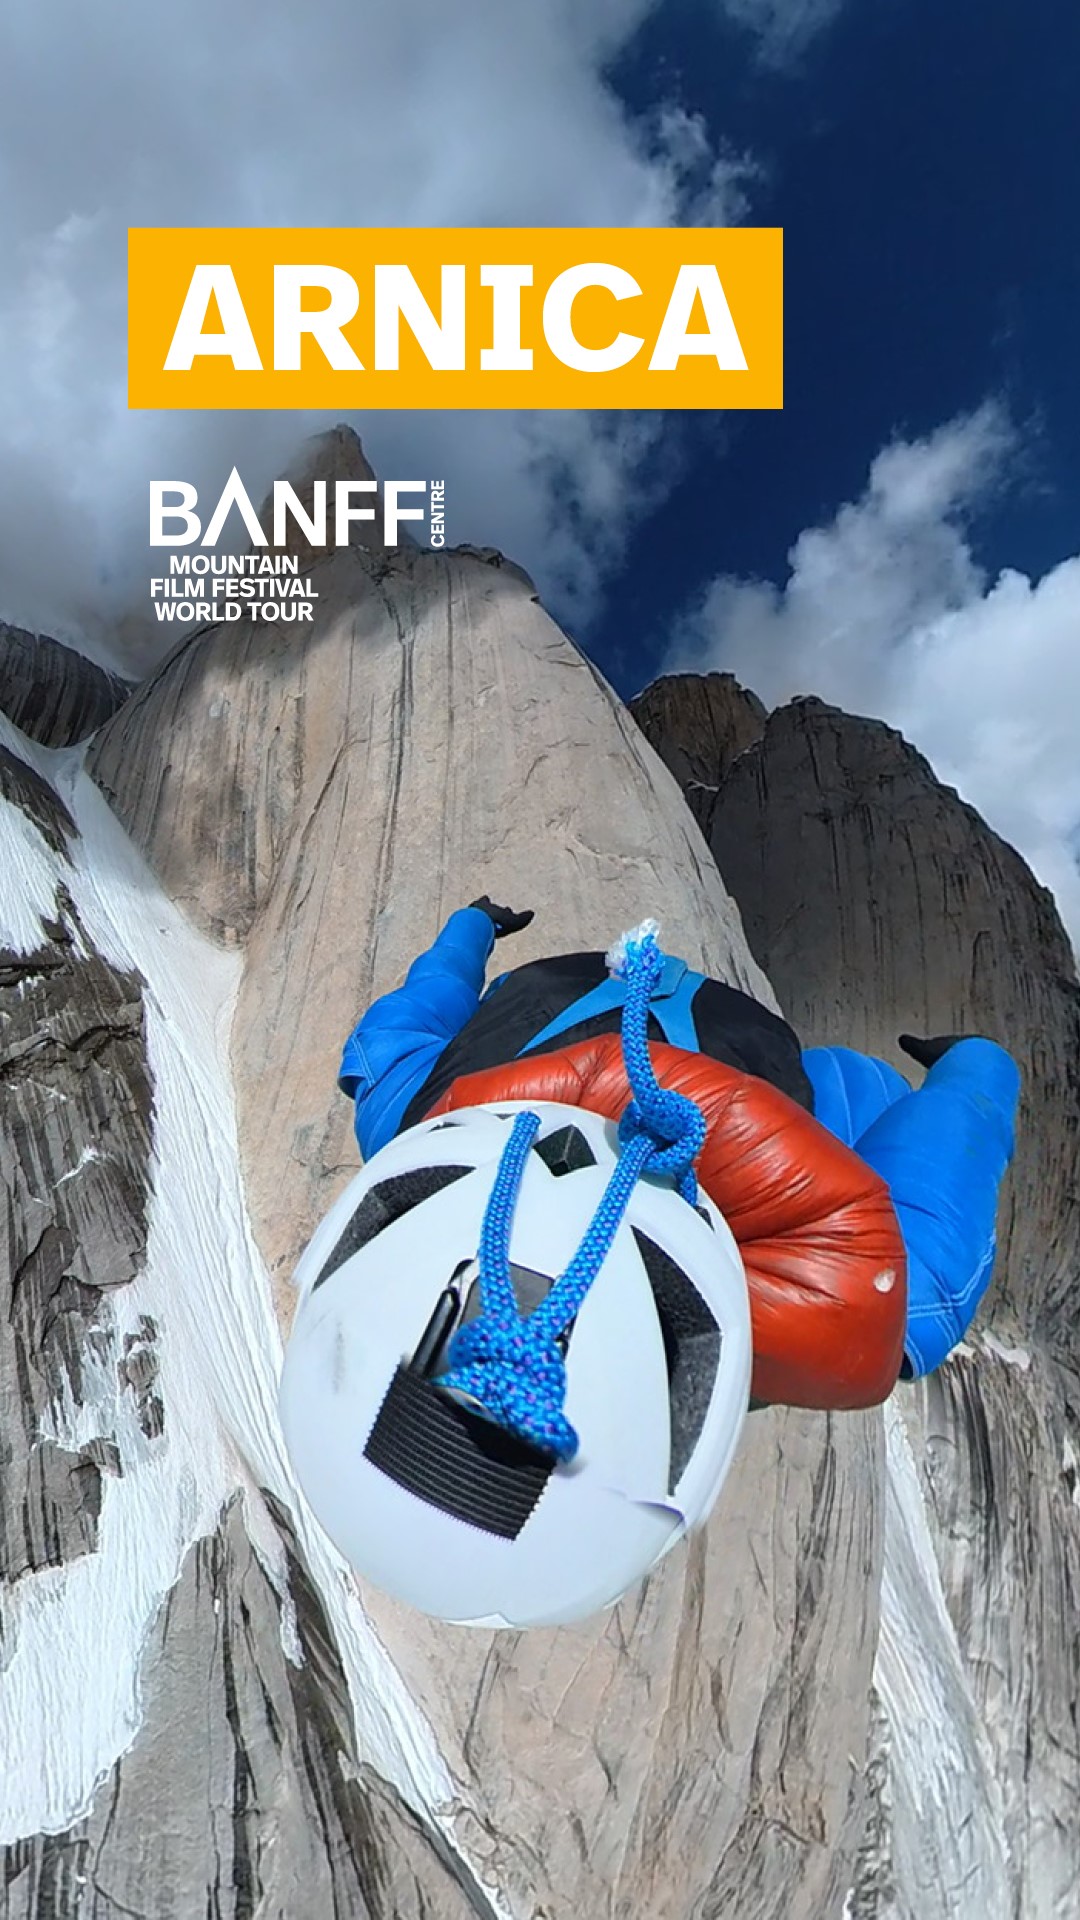 Banff Mountain Film Festival - Friday Night - Tempe, Az  on mars 15, 19:00@Pollack Tempe Cinemas - Achetez des billets et obtenez des informations surLive To Play livetoplay